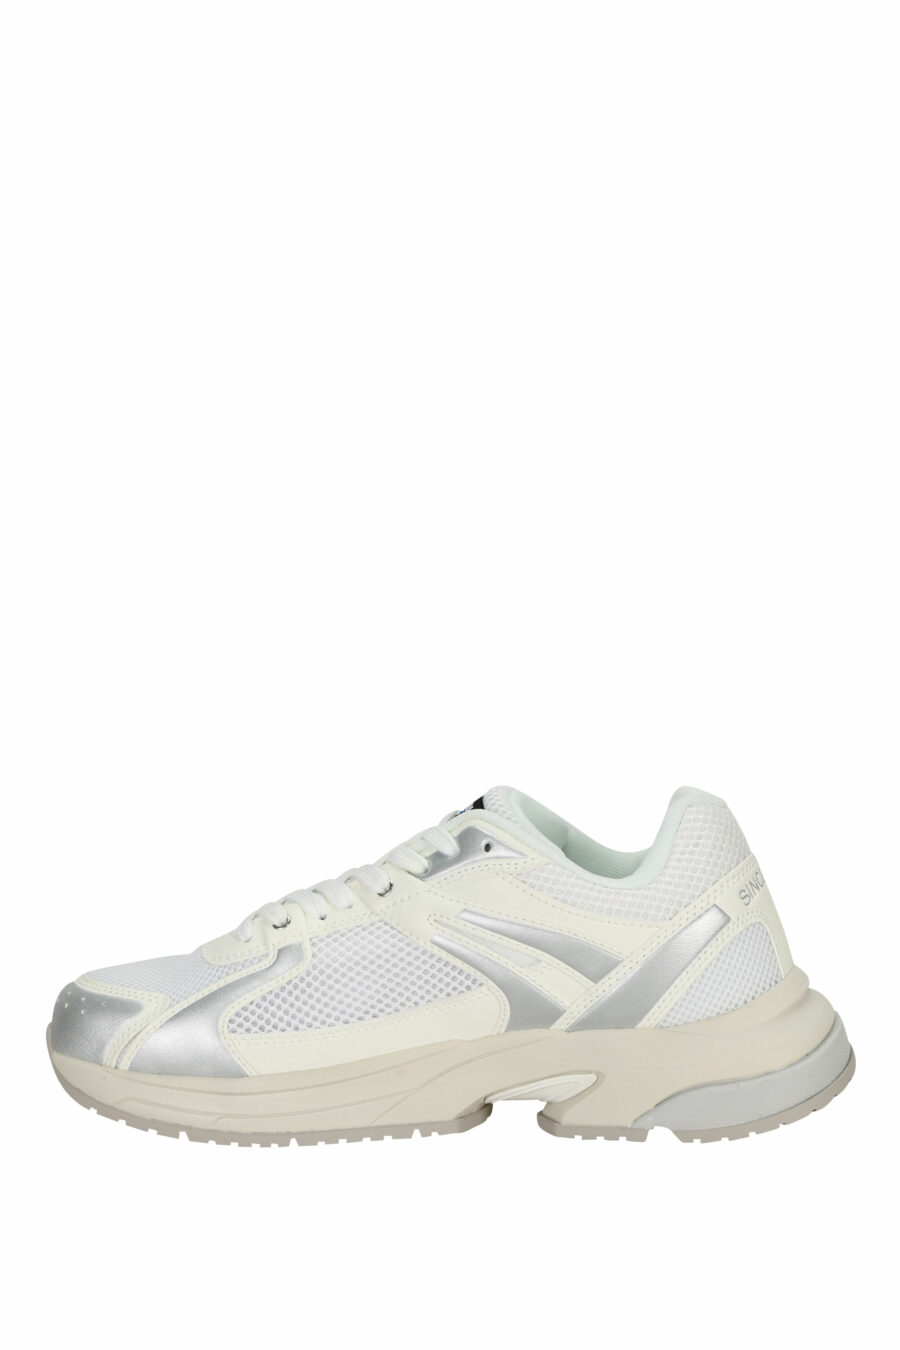 Chaussures blanches avec logo "aigle" argenté et bouclier blanc - 8058156543539 2